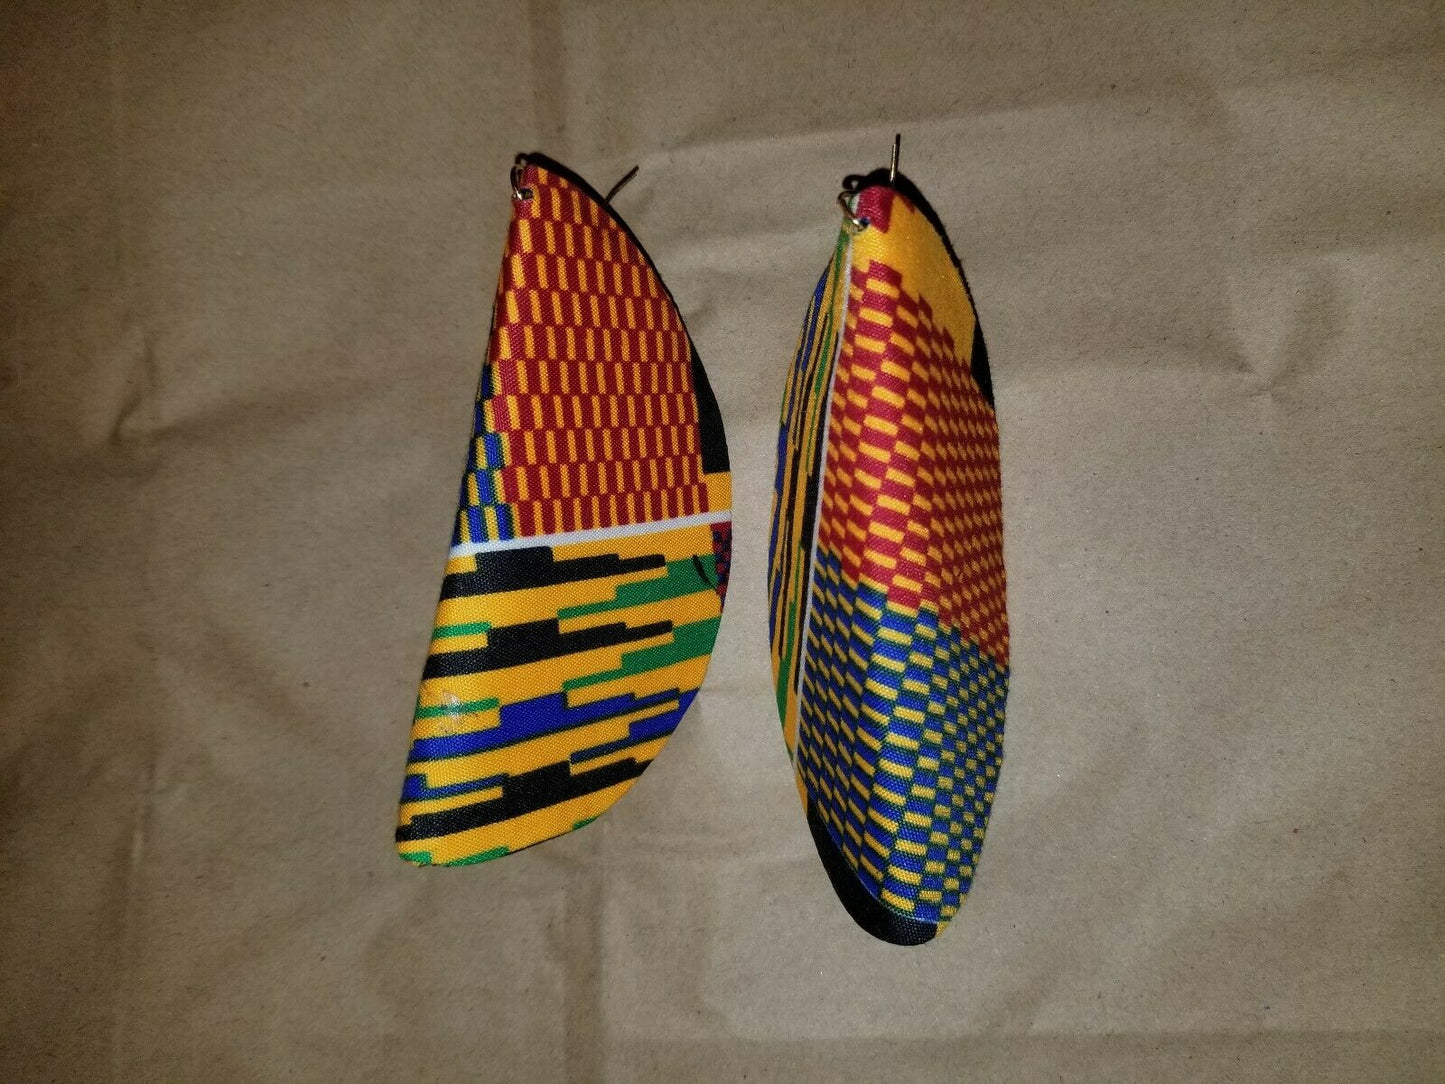 African Print Butterfly Earrings